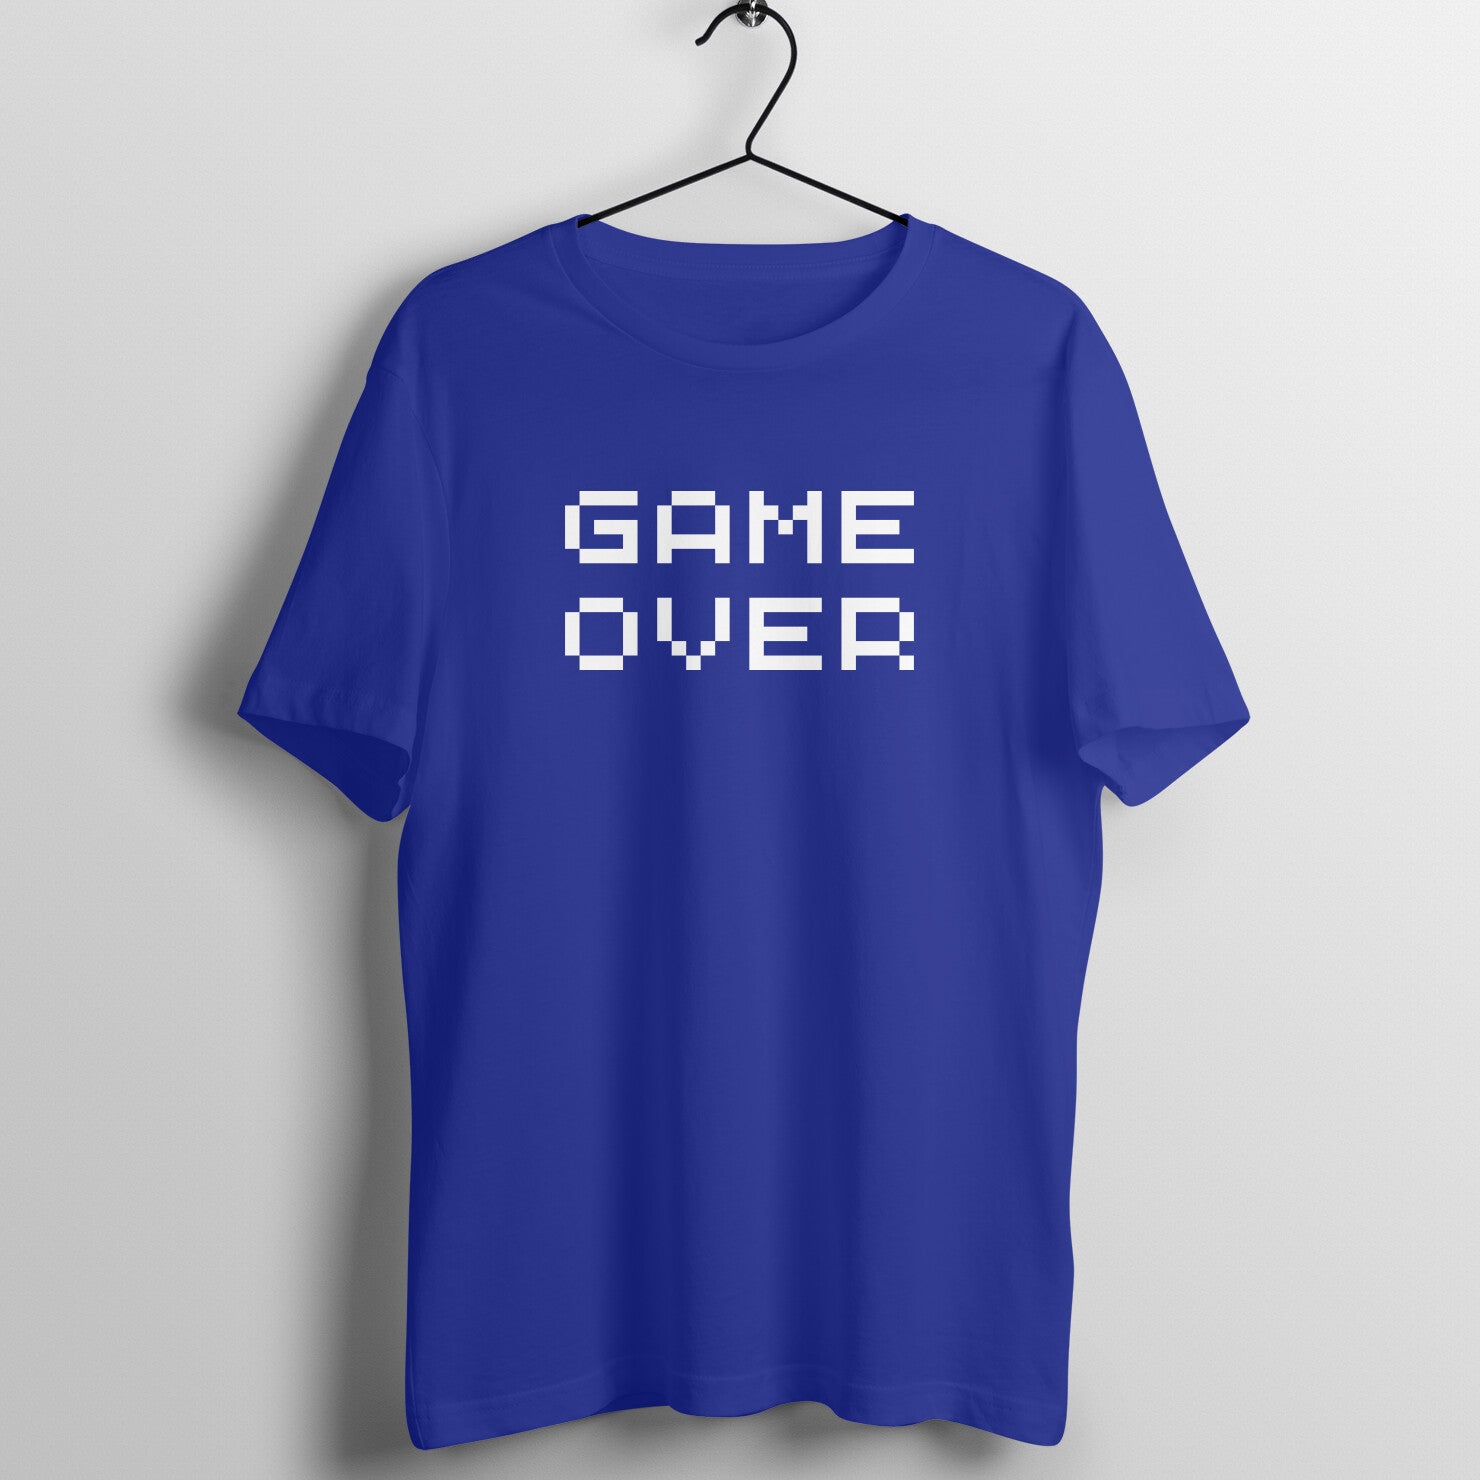 funny gaming shirtfunny gaming shirt for men